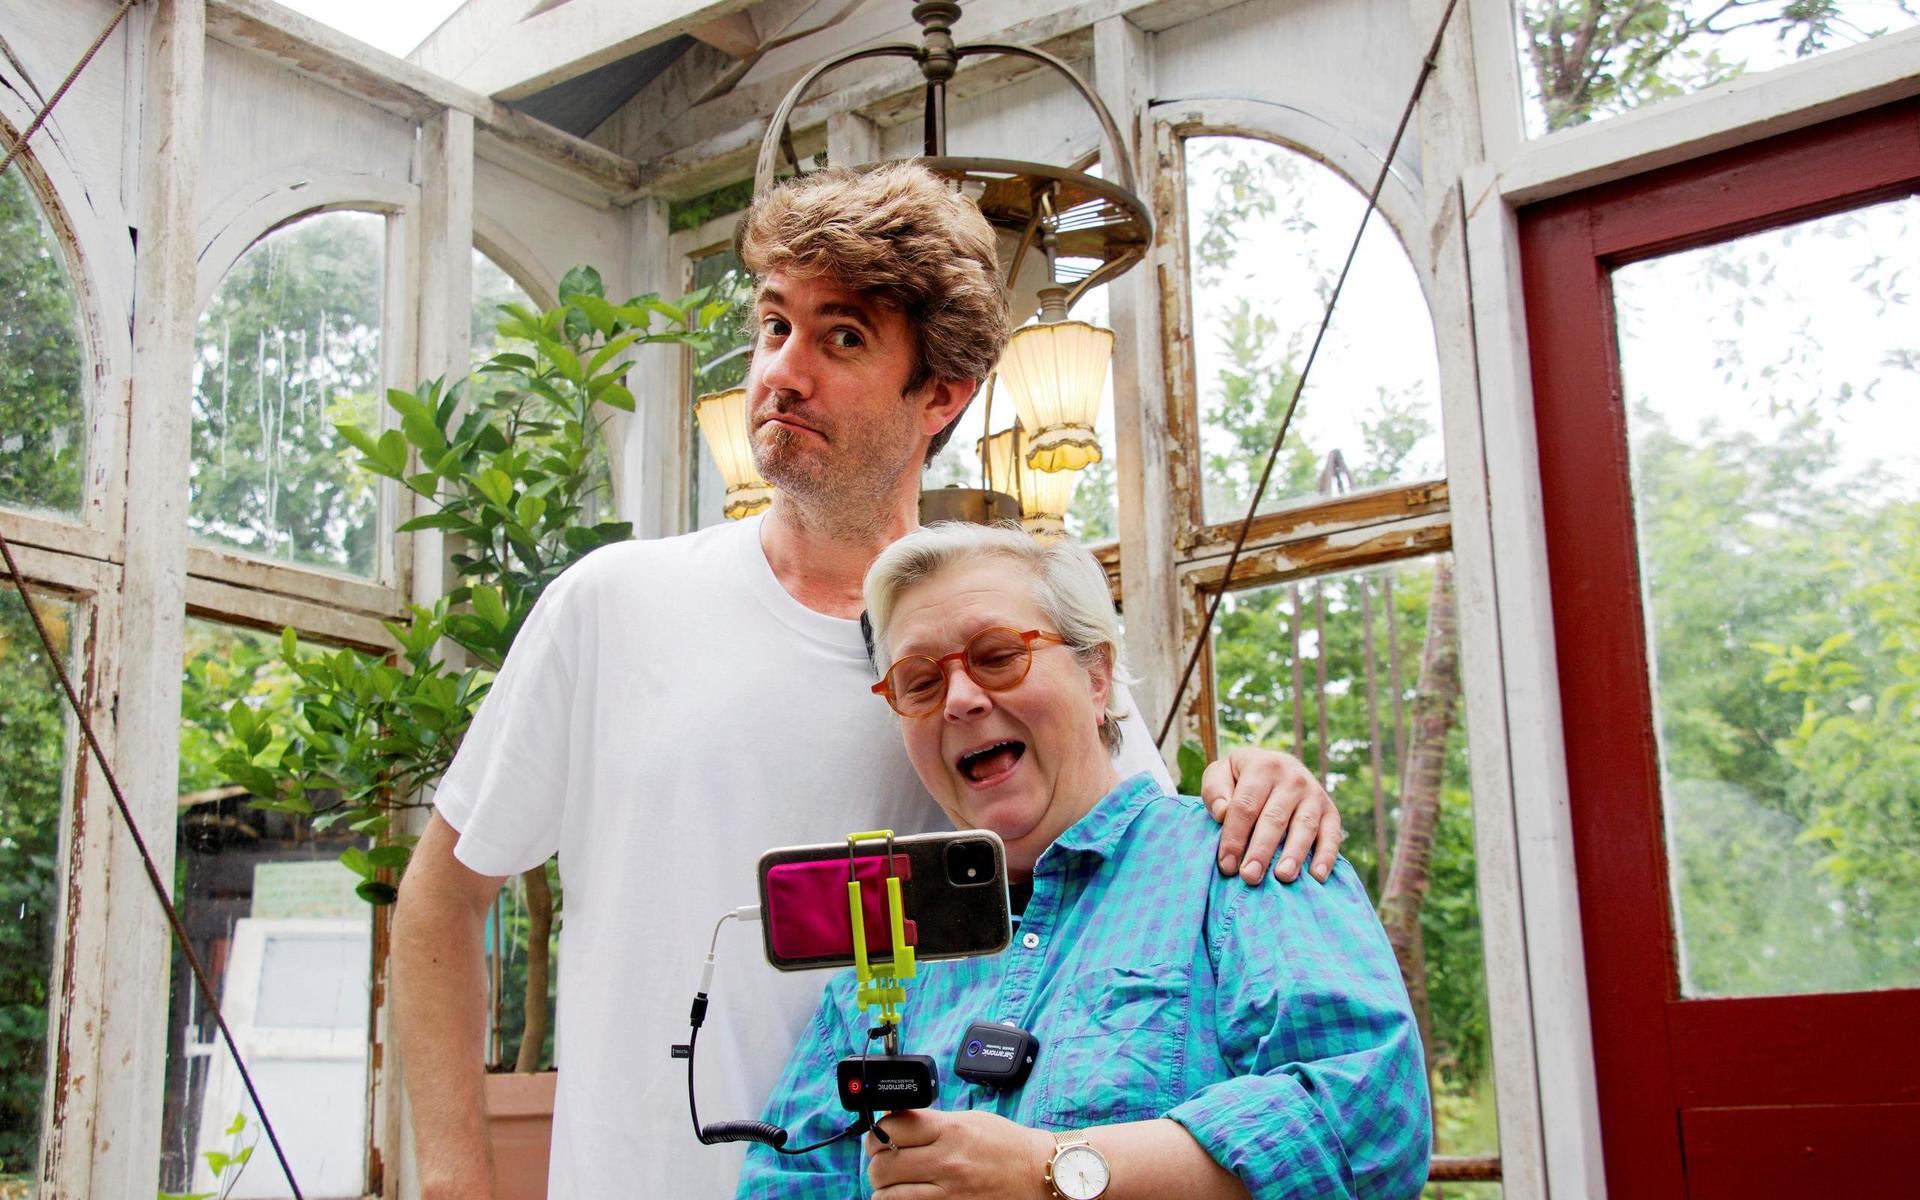 Peter Bengtsson och Maggan Ek har under sommaren drivit ett annat projekt mot isolering, de livesände varje dag från sin trädgård för hundratals tittare. 